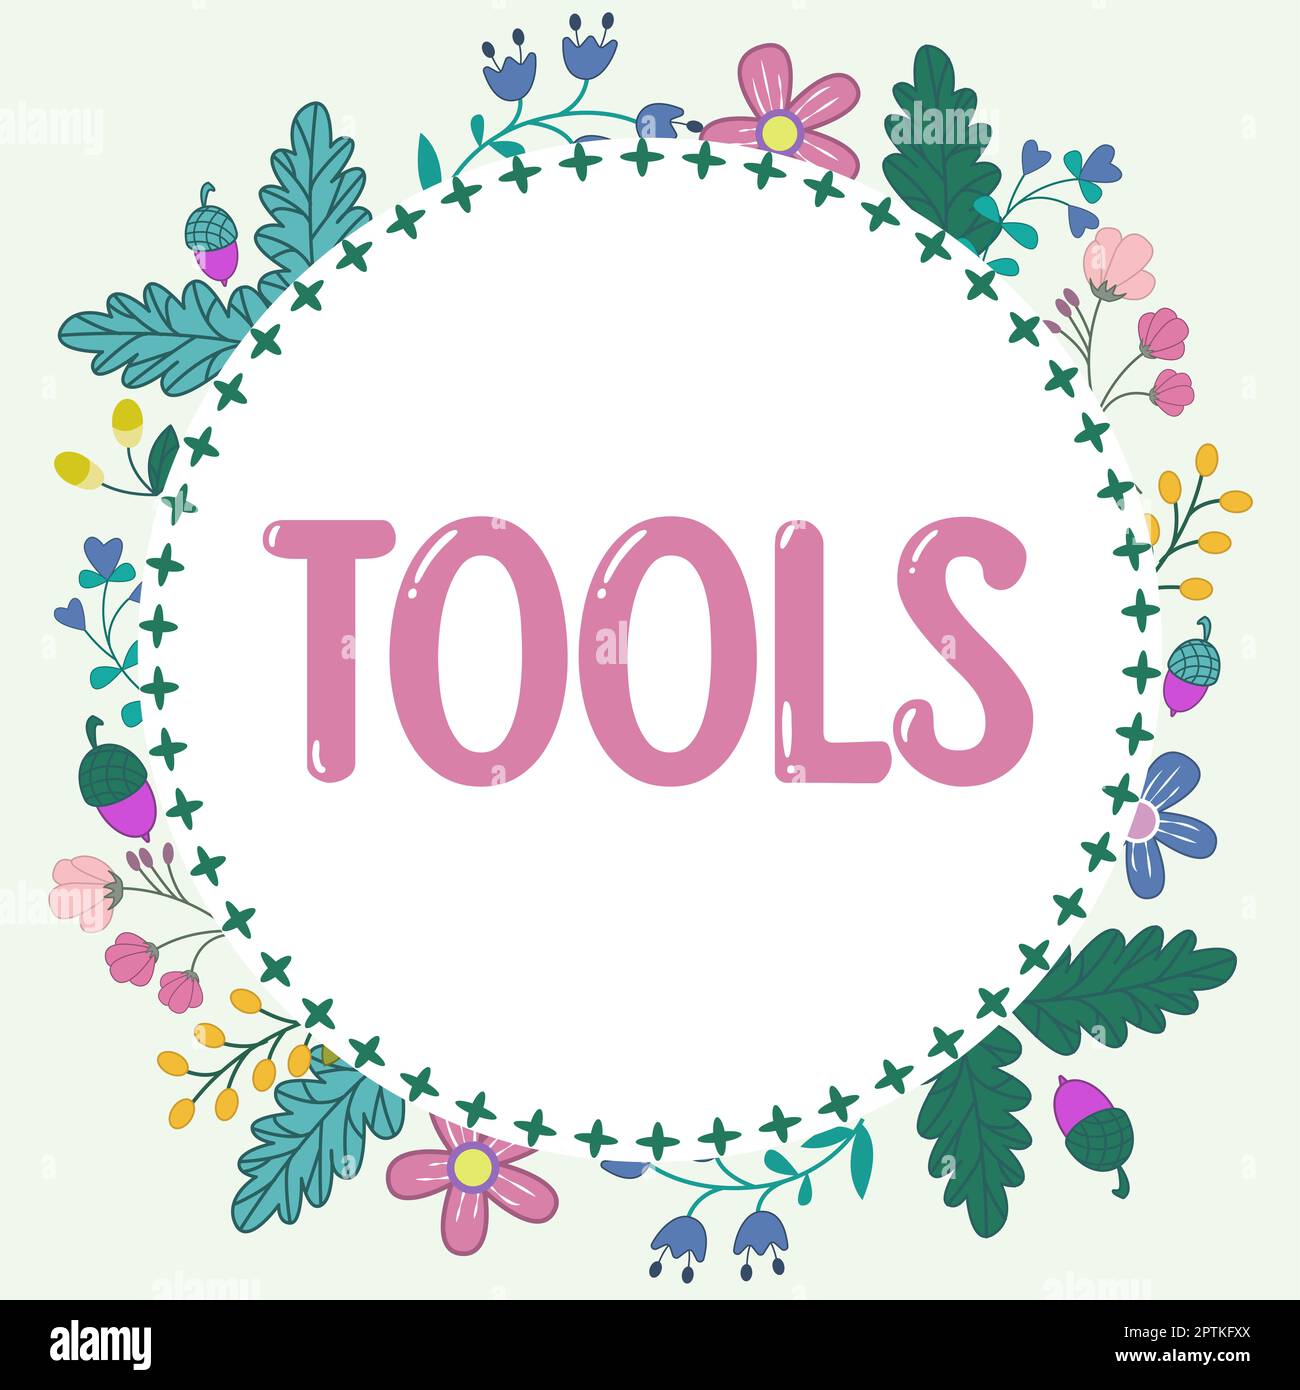 Textunterschrift Presenting Tools, Word für Gerät implementieren wie gehalten und verwendet bestimmte Funktion ausführen Stockfoto